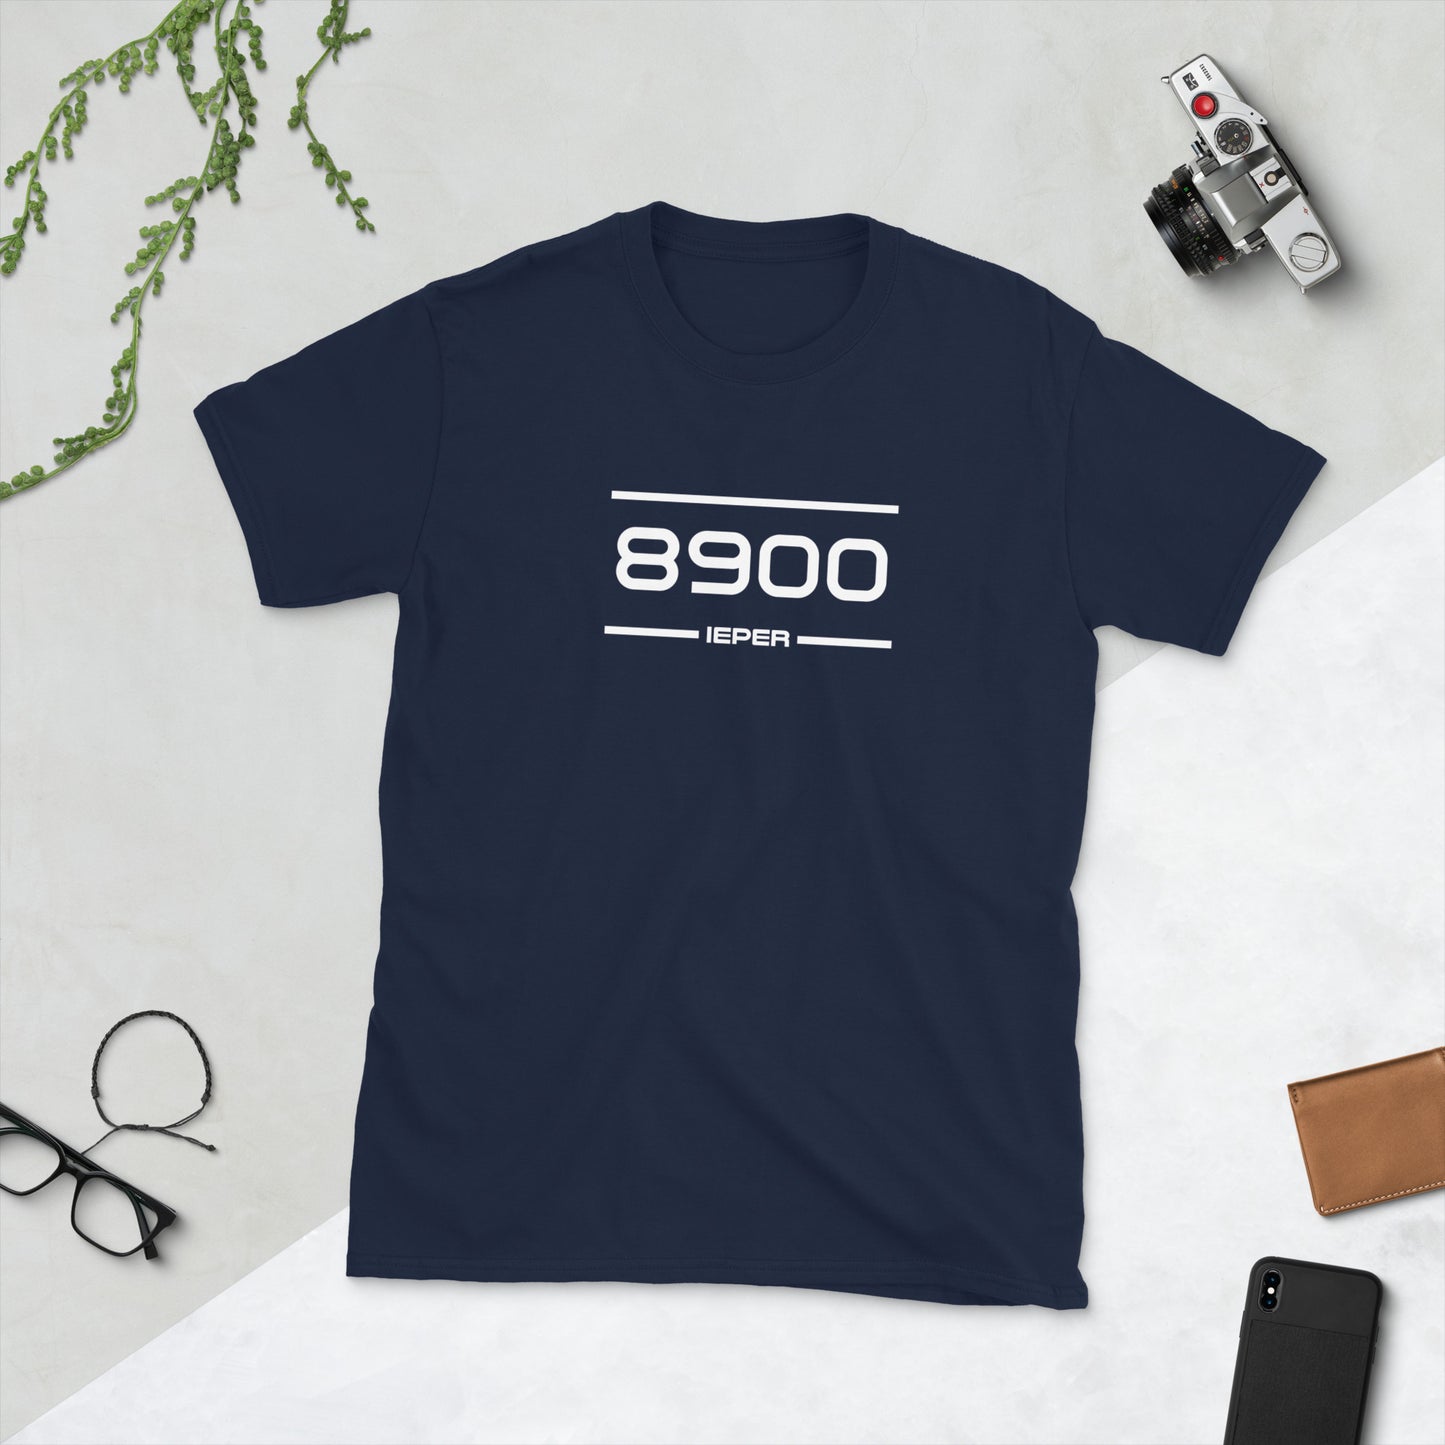 Tshirt - 8900 - Ieper